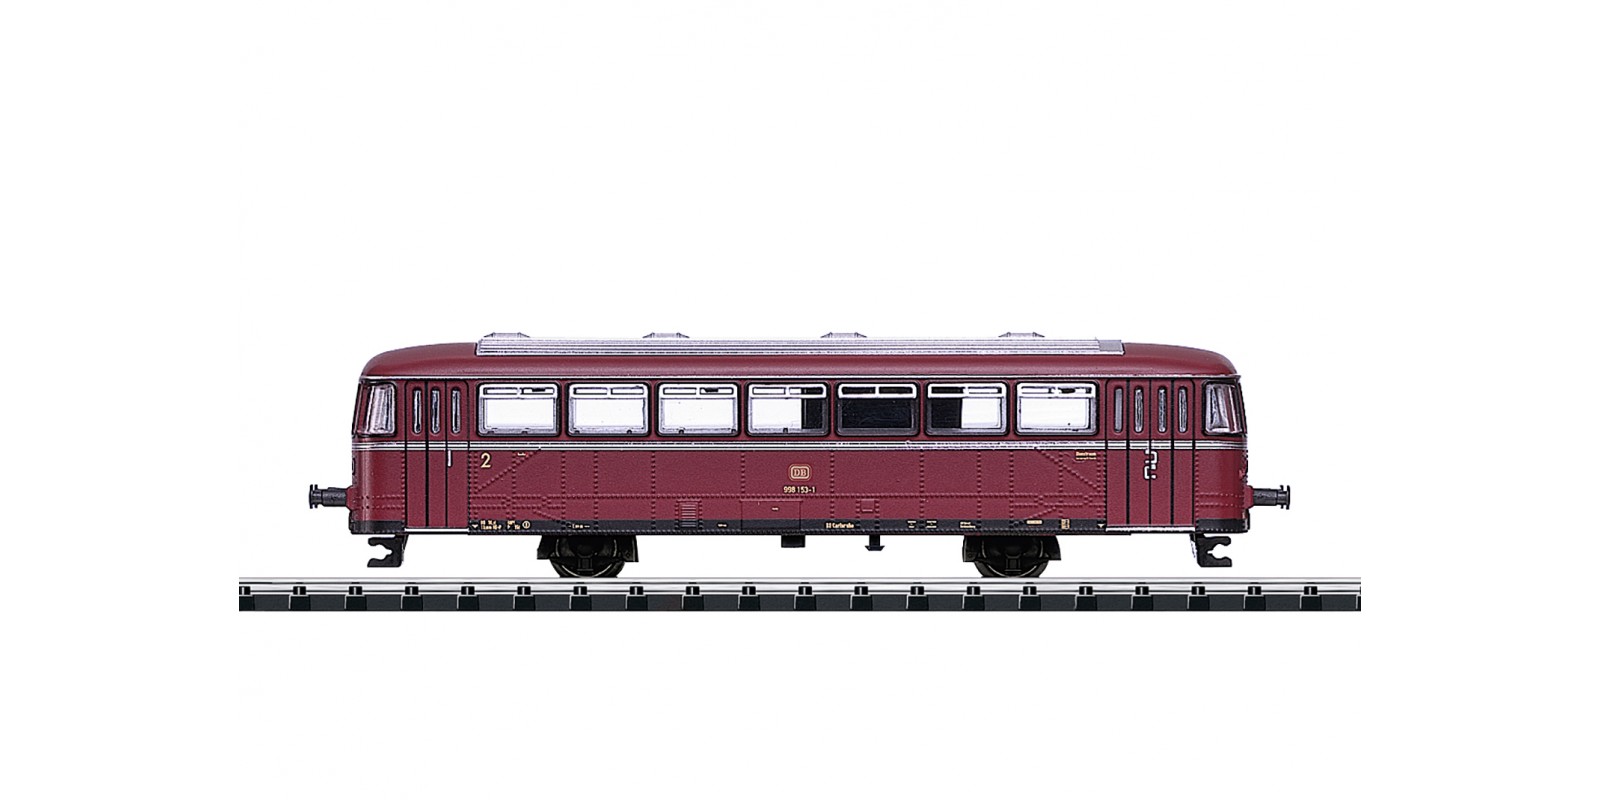 T15394 Class VB 98 